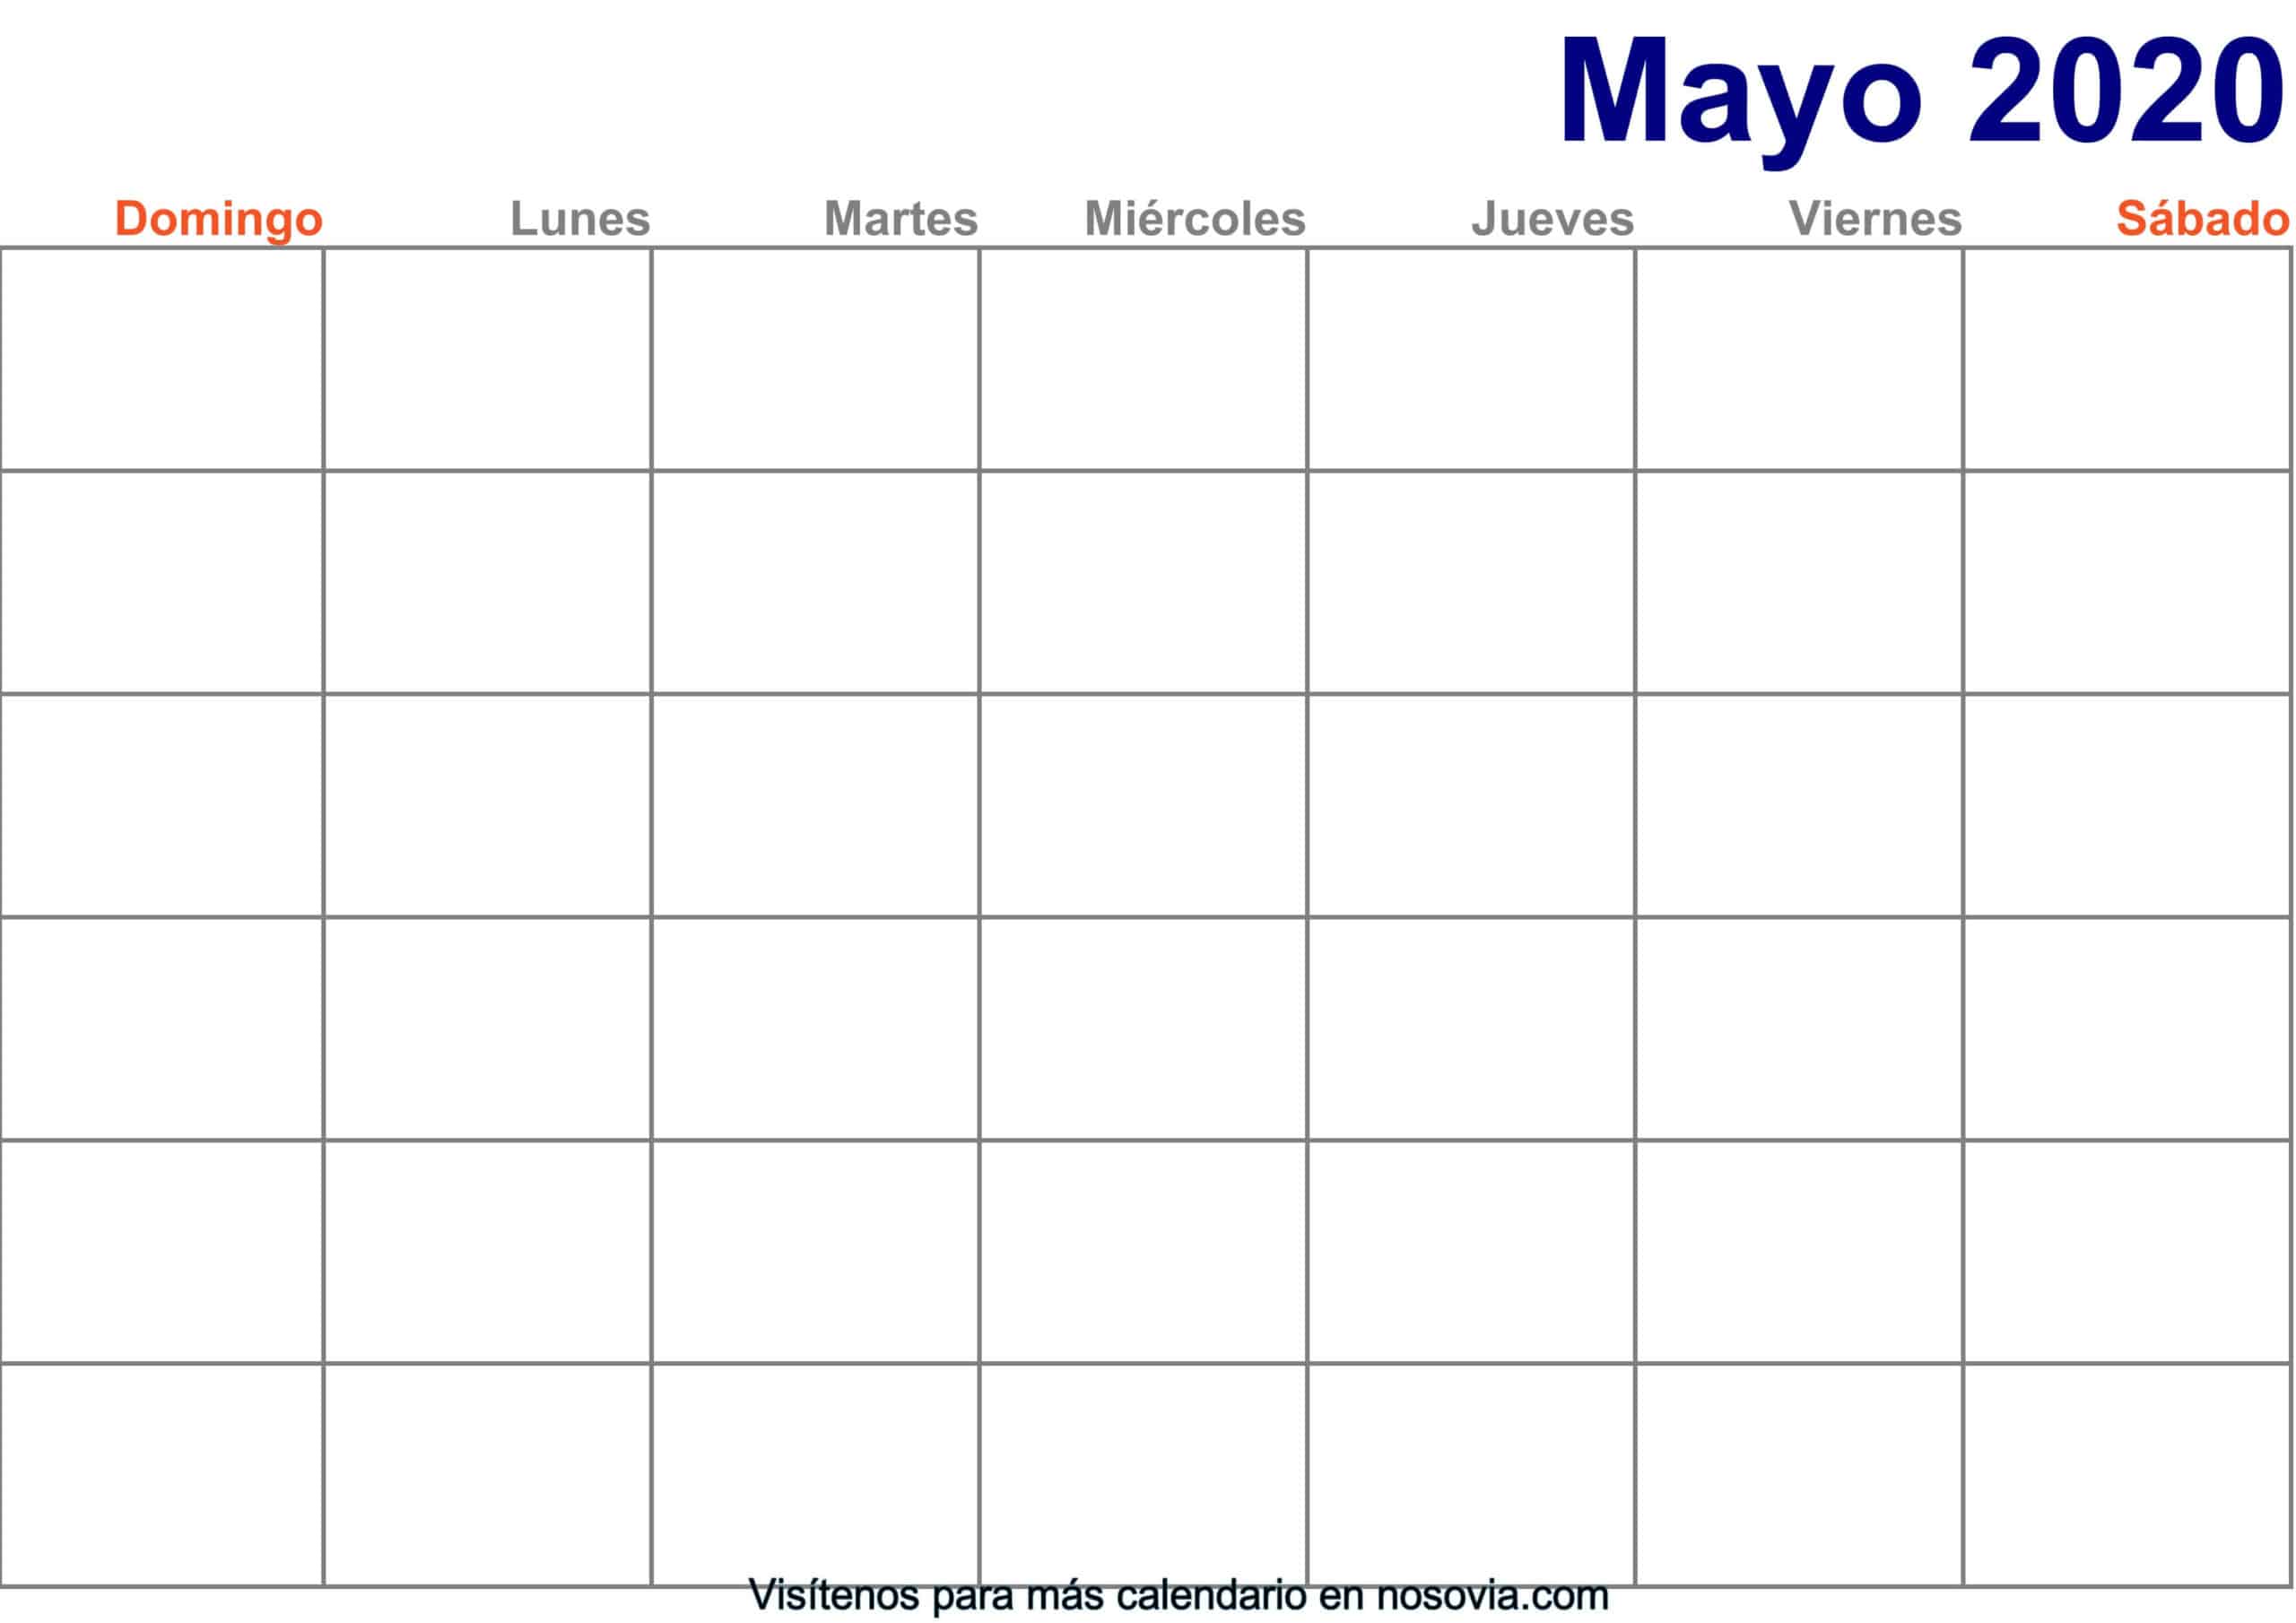 Calendario-mayo-2020-en-blanco-Imprimir-gratis